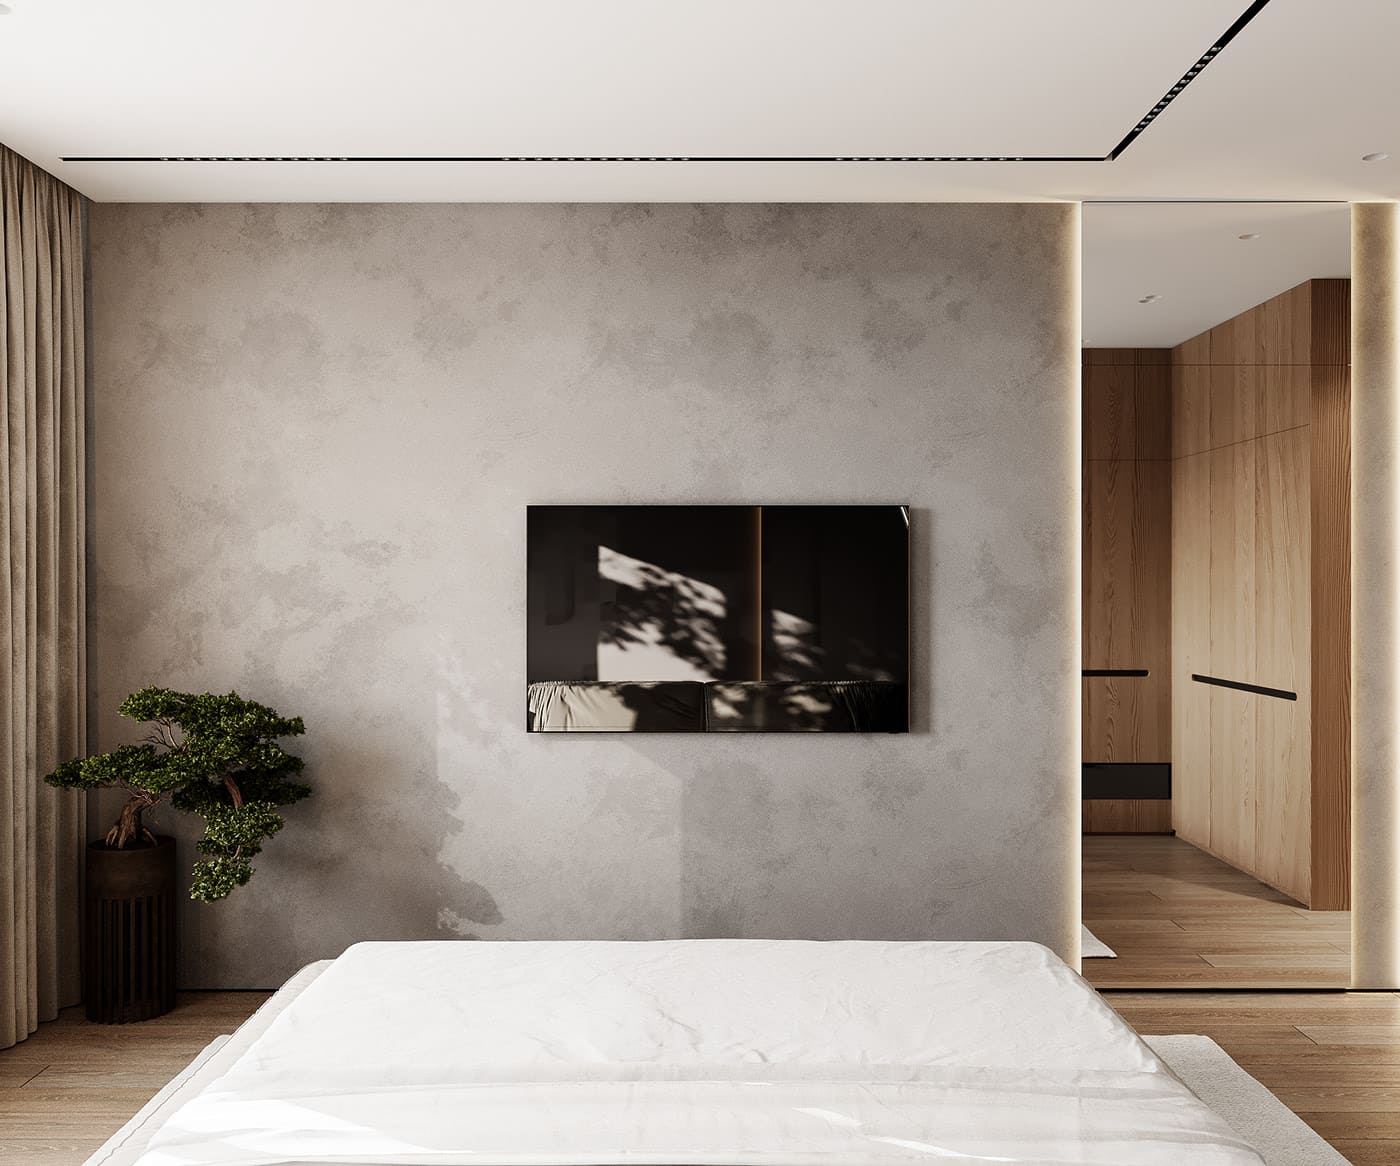 Лаконичная квартира в стиле минимализм, спальня, фото 9